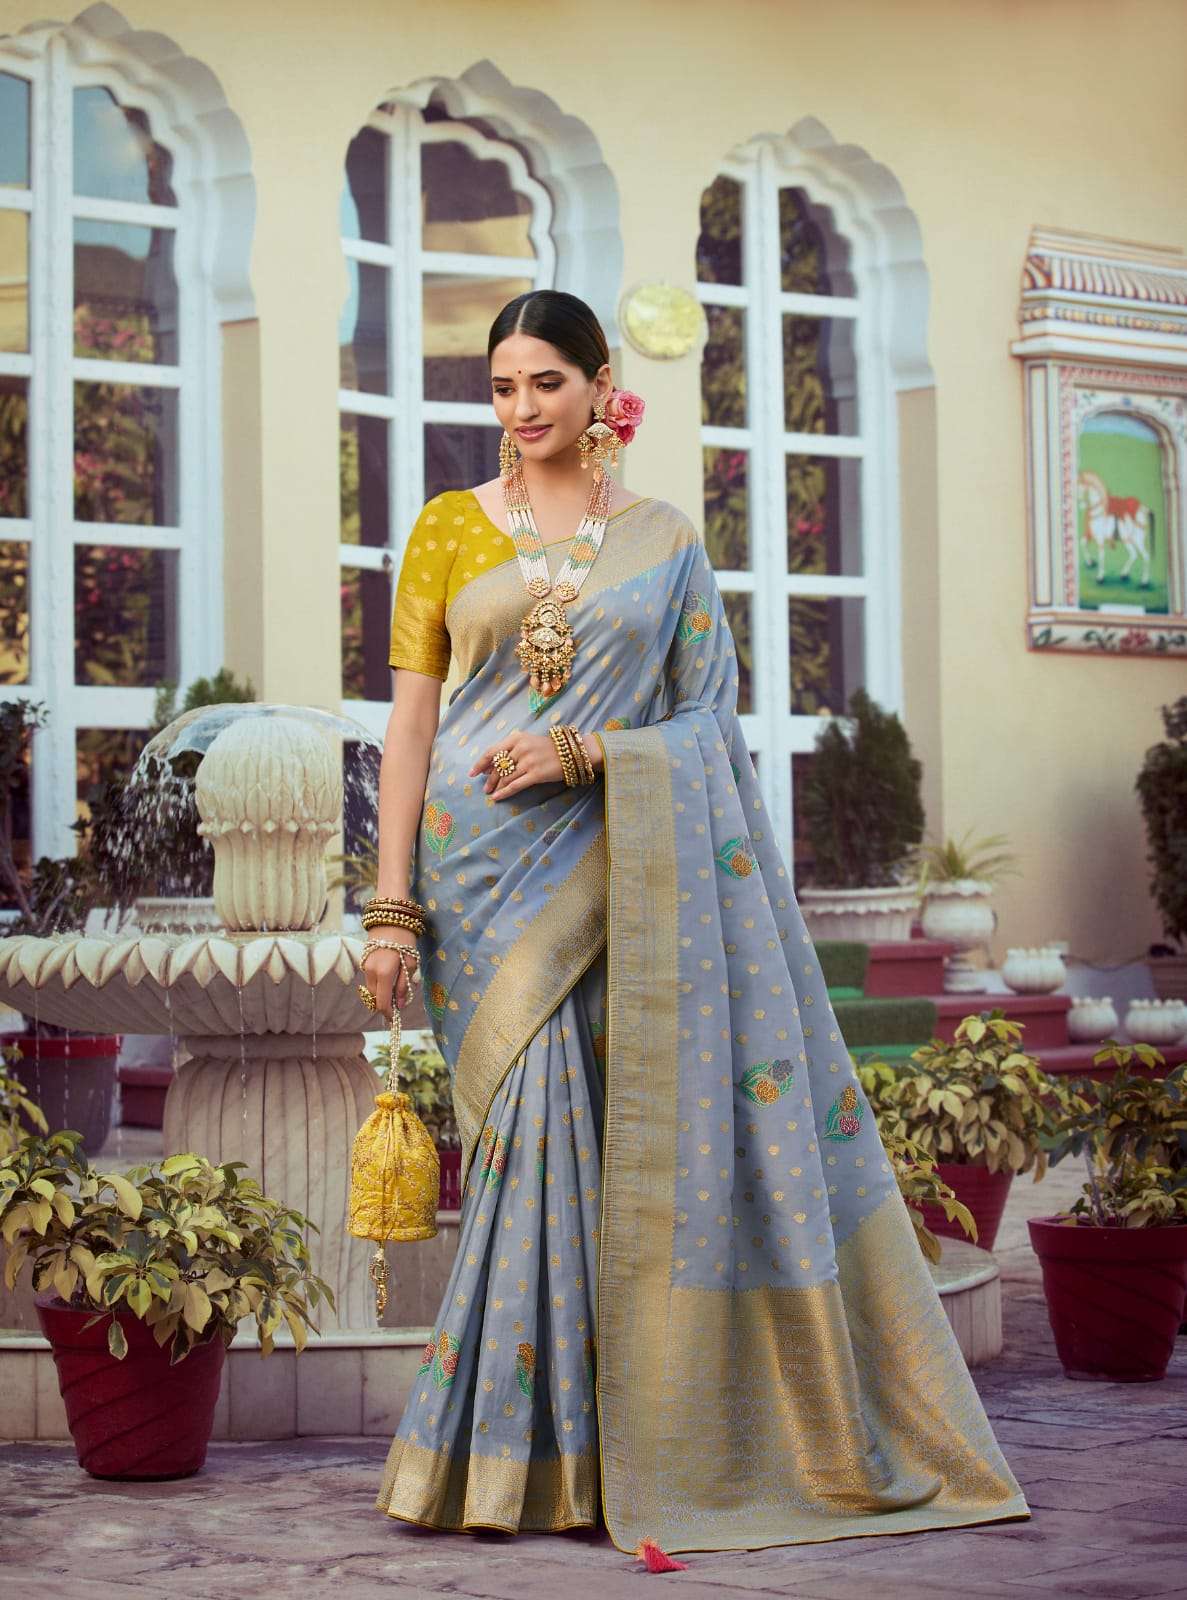 Wedding Special: लहंगा नहीं, शादी के लिए चुनें साड़ी, इन बॉलीवुड एक्ट्रेस  से लें इंस्प्रिशन | in wedding dont wear lehenga try saree Take Tips From  These Actres Wedding Outfits | TV9 Bharatvarsh